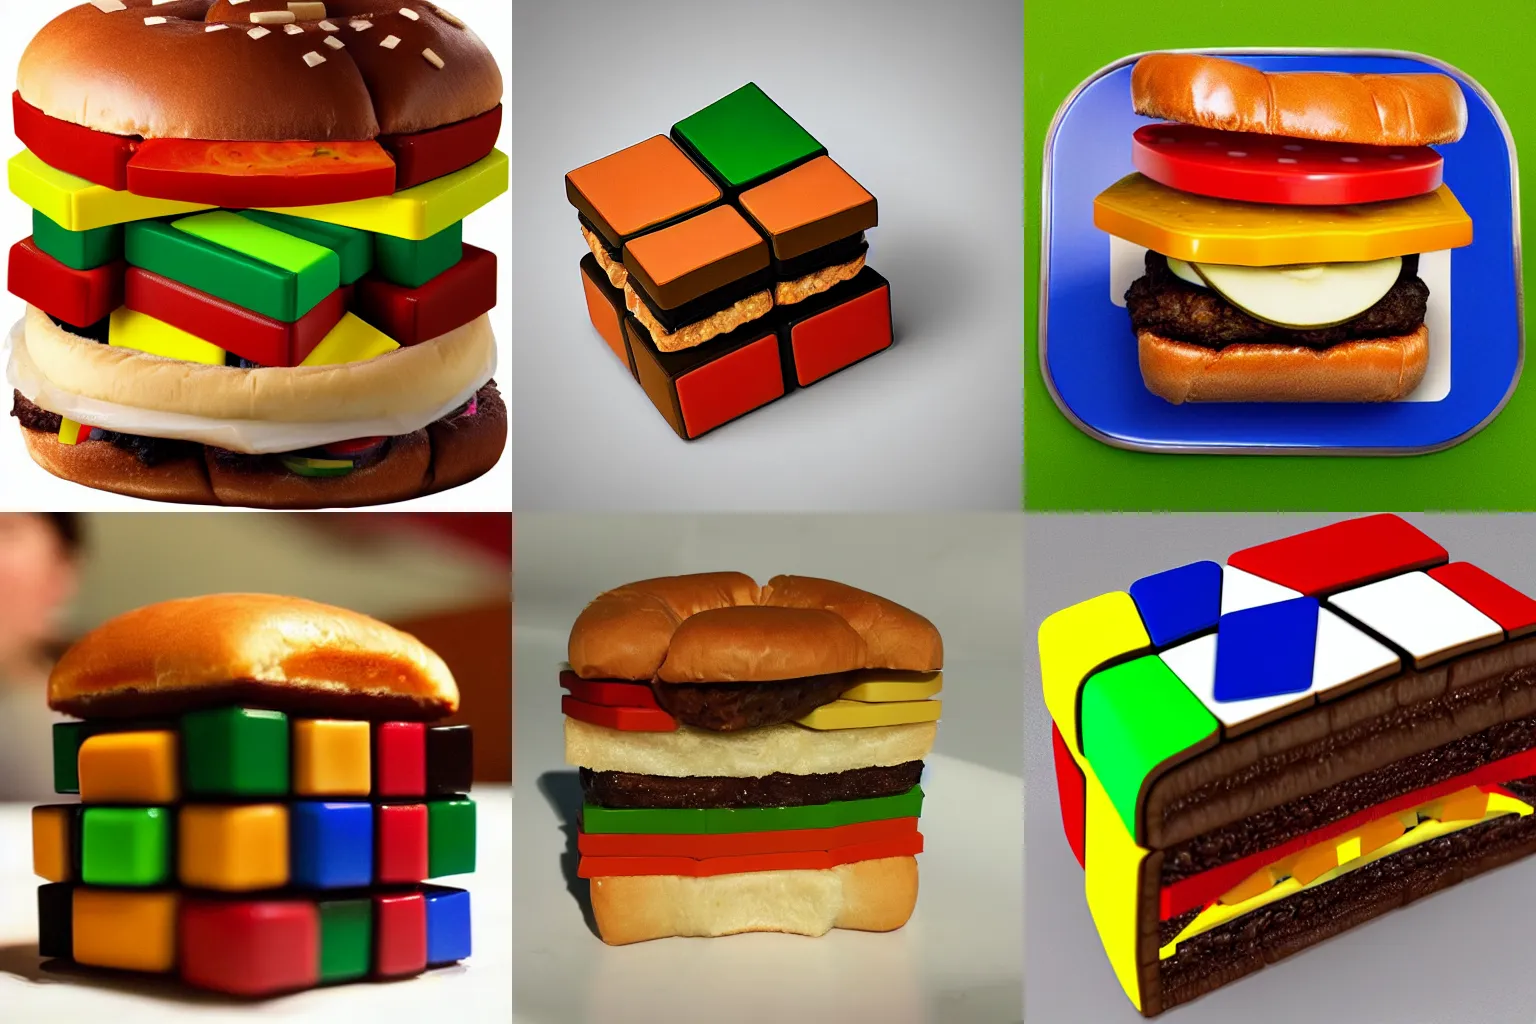 Prompt: rubiks cube hamburger, 4k